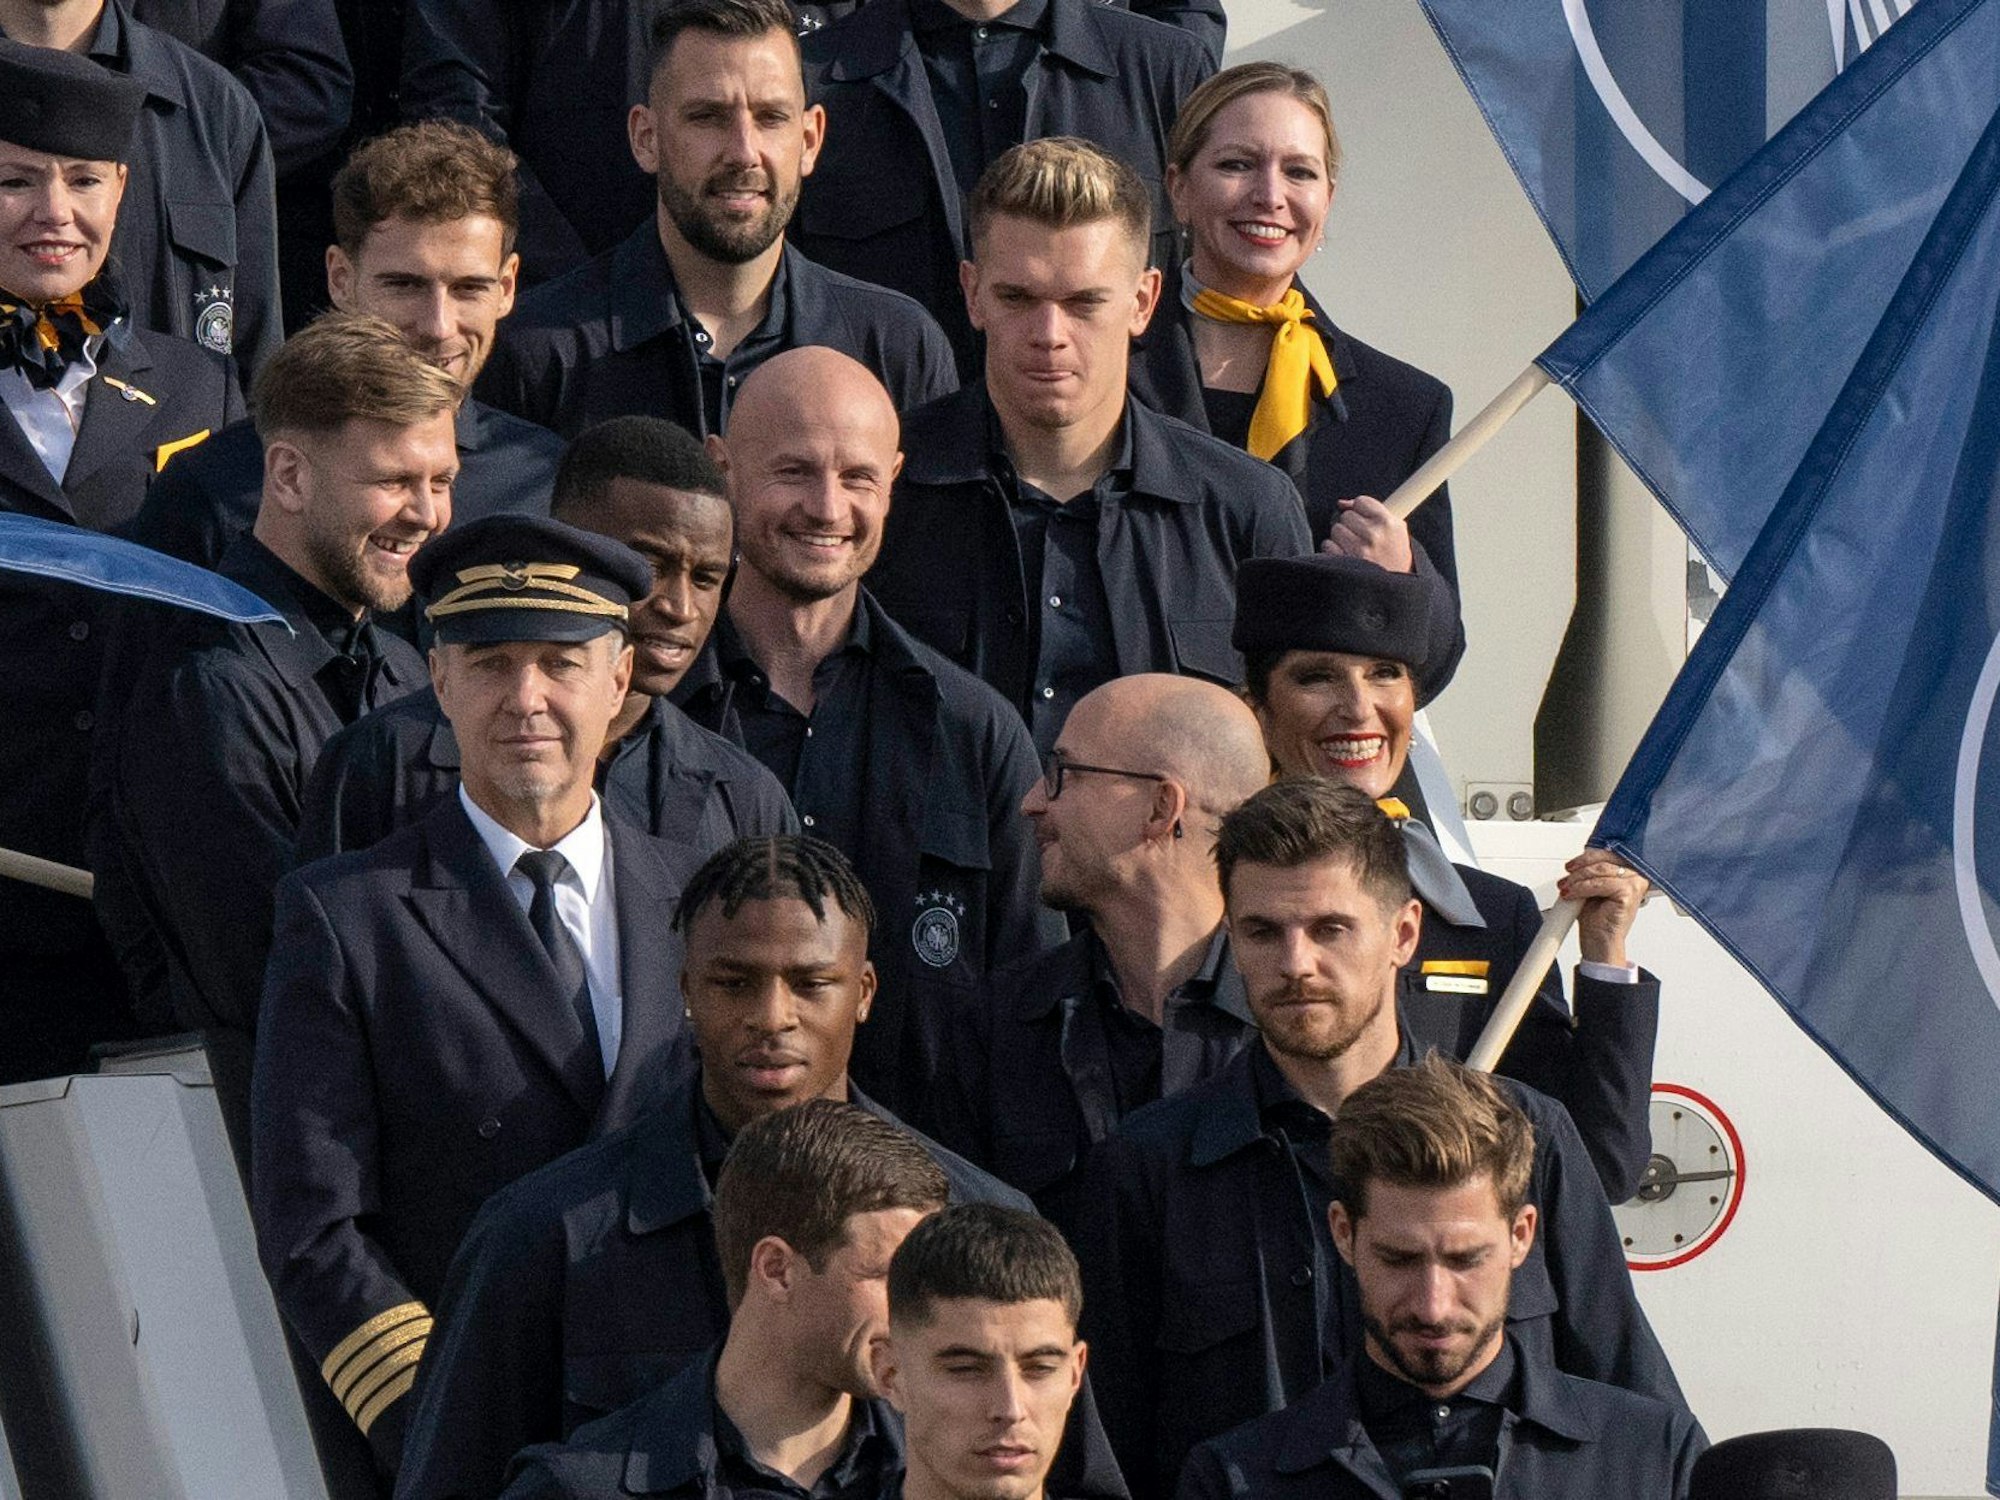 Offizielle, Betreuer und Spieler der deutschen Fußball-Nationalmannschaft sowie Personal der Lufthansa haben vor dem Abflug Aufstellung für ein Gruppenbild genommen.